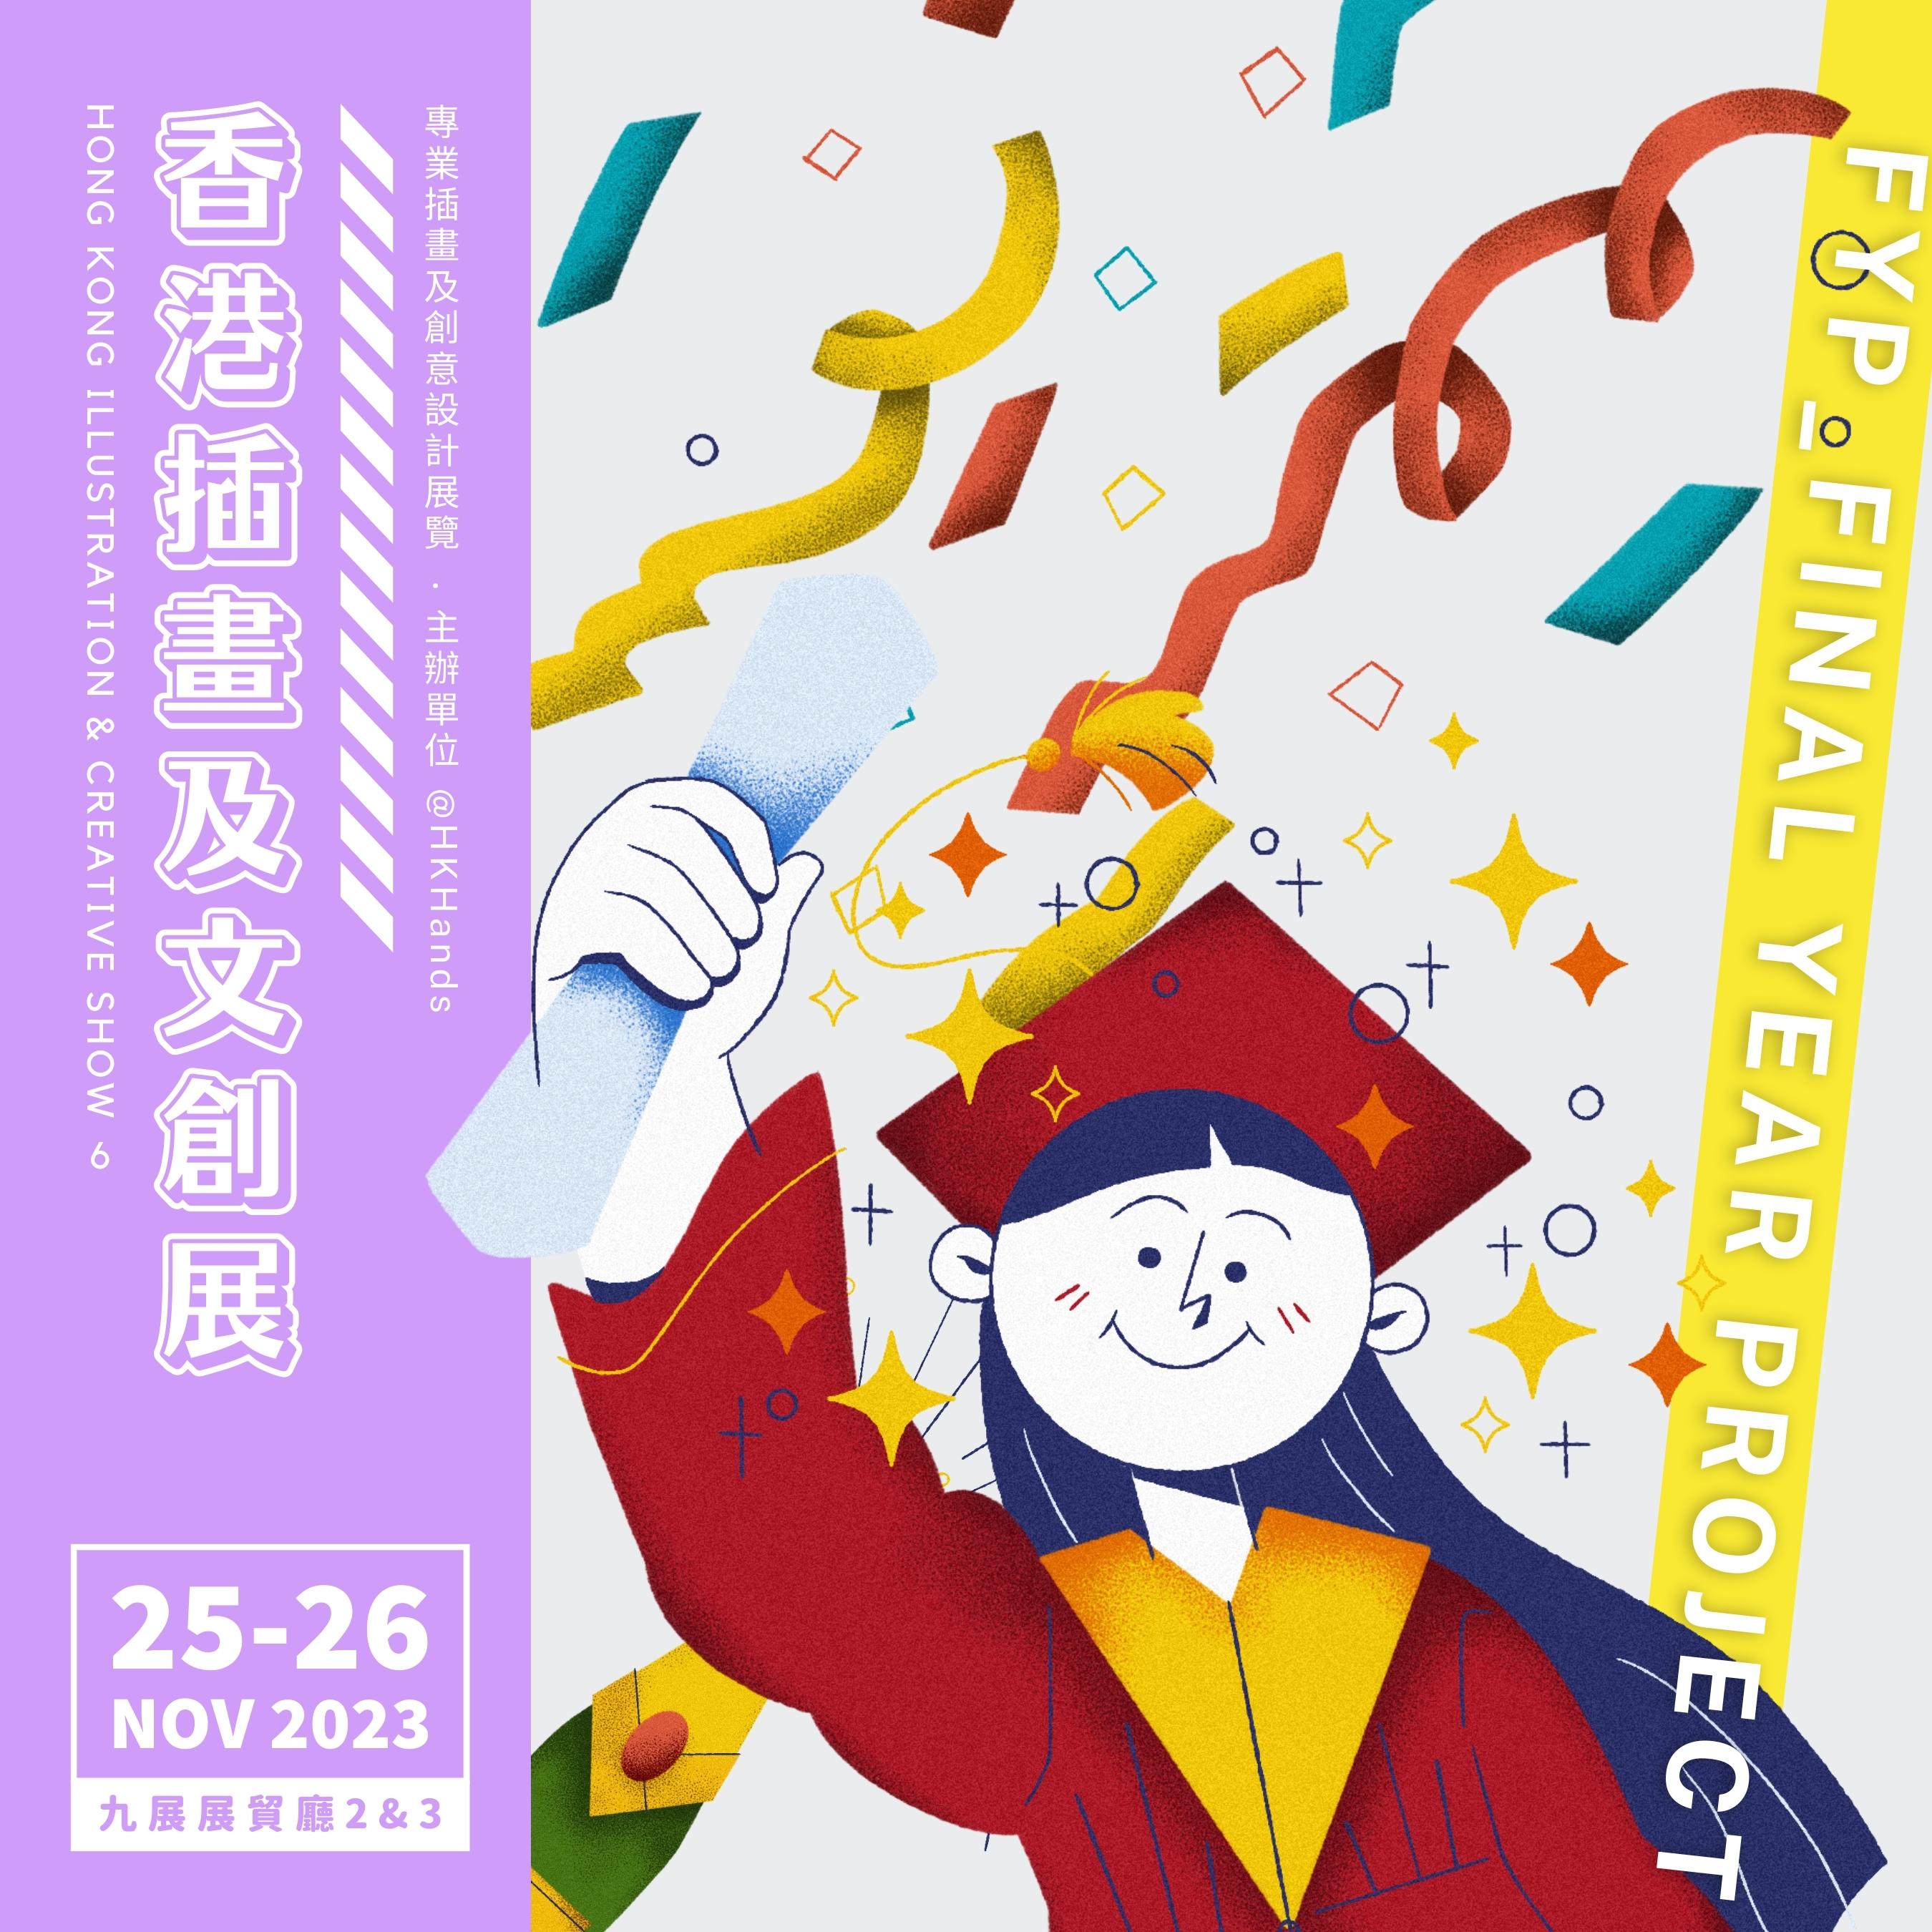 香港插画及文创展6 (城区活动2023之卫星活动)